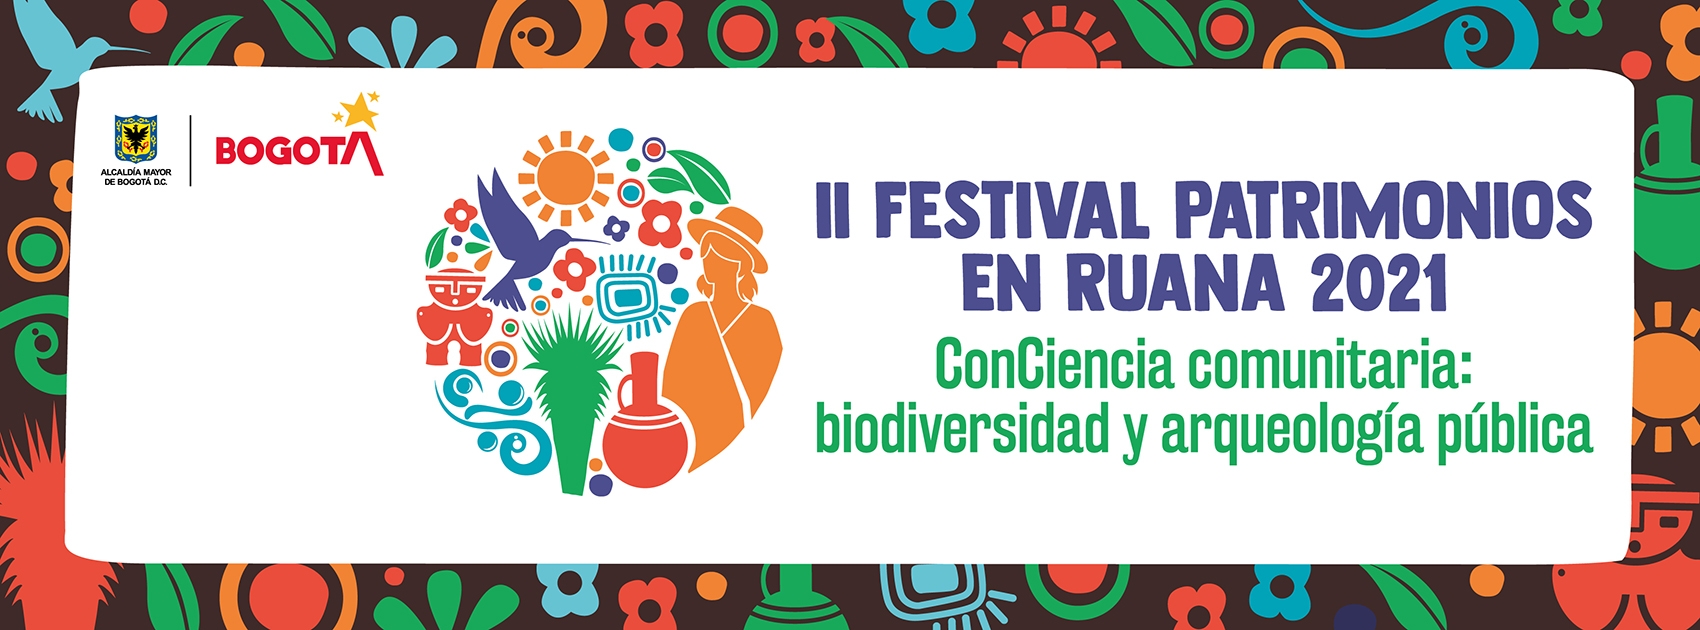 II Festival Patrimonios en Ruana 2021